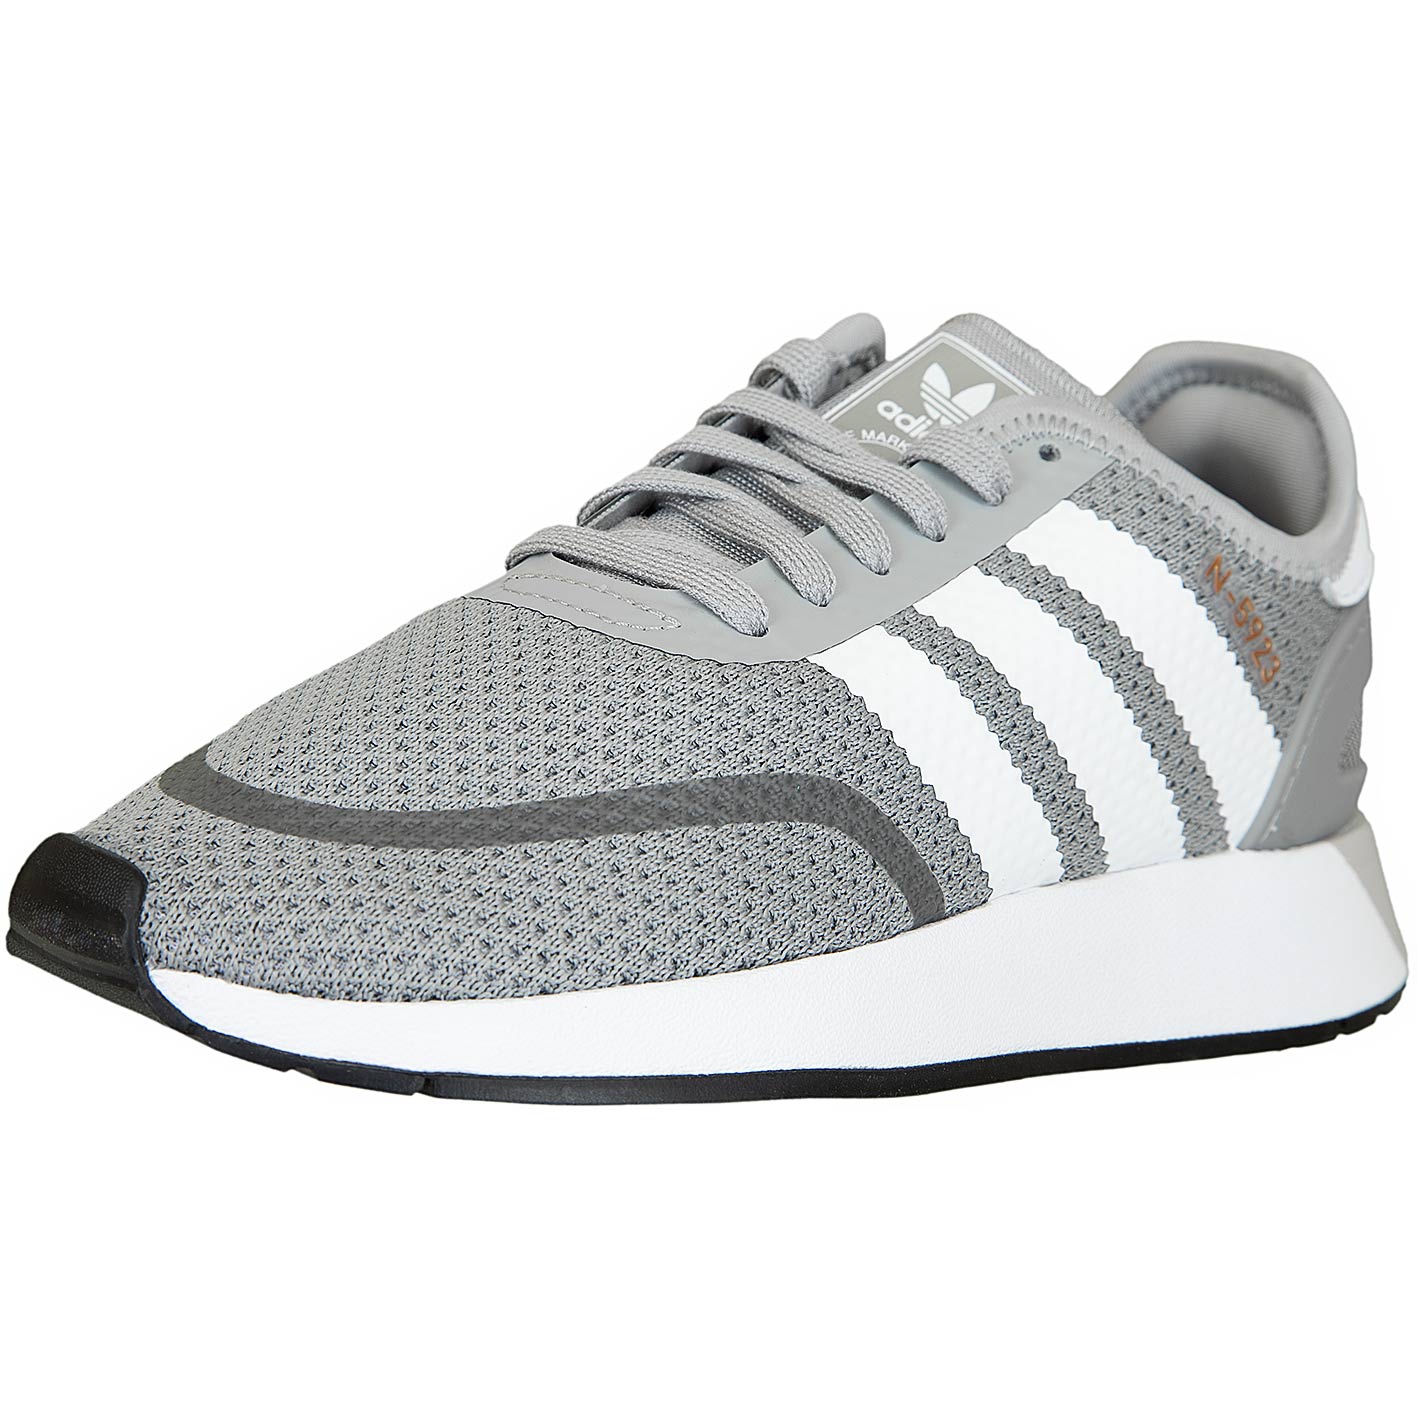 ☆ Adidas Originals Sneaker N-5923 grau/weiß/schwarz - hier bestellen!